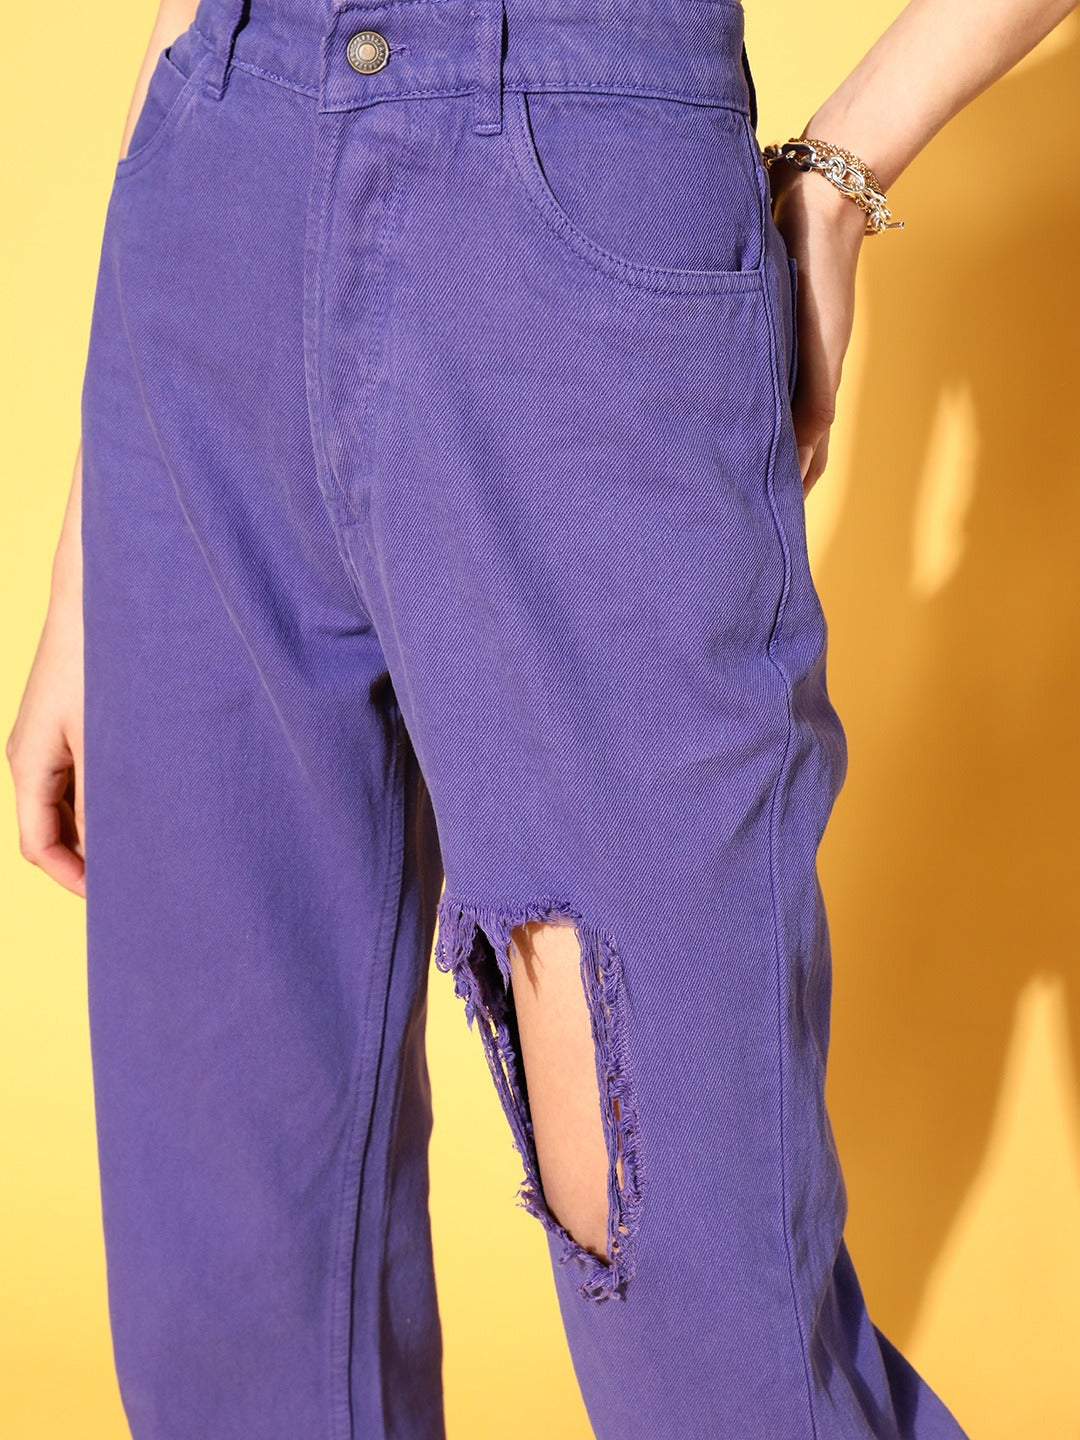 Women Purple Distressed Jeans